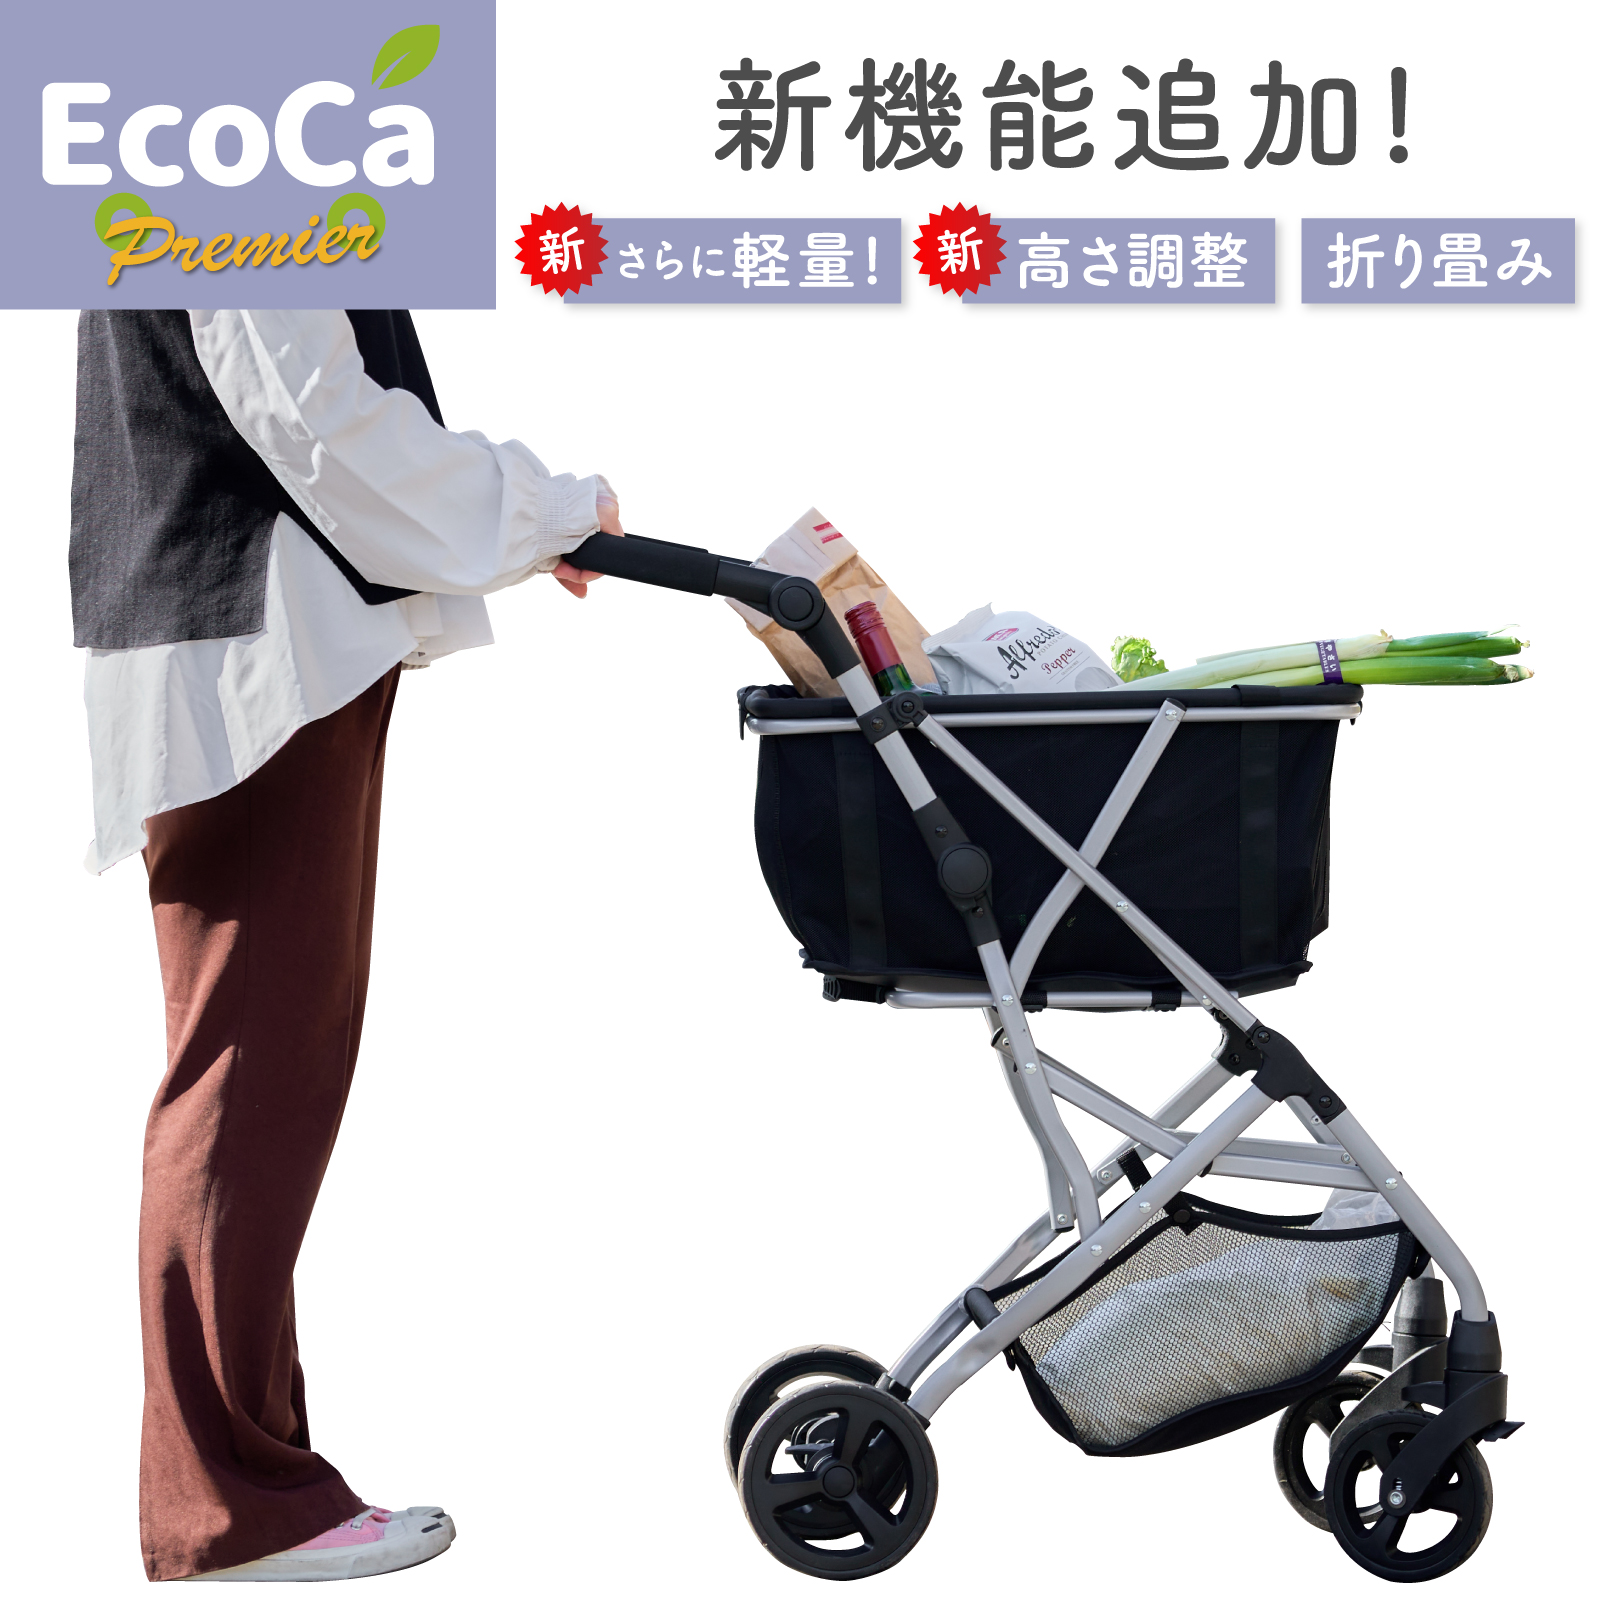 未使用 展示品 エコカ ecoca マイバッグ ショッピングカート セール 